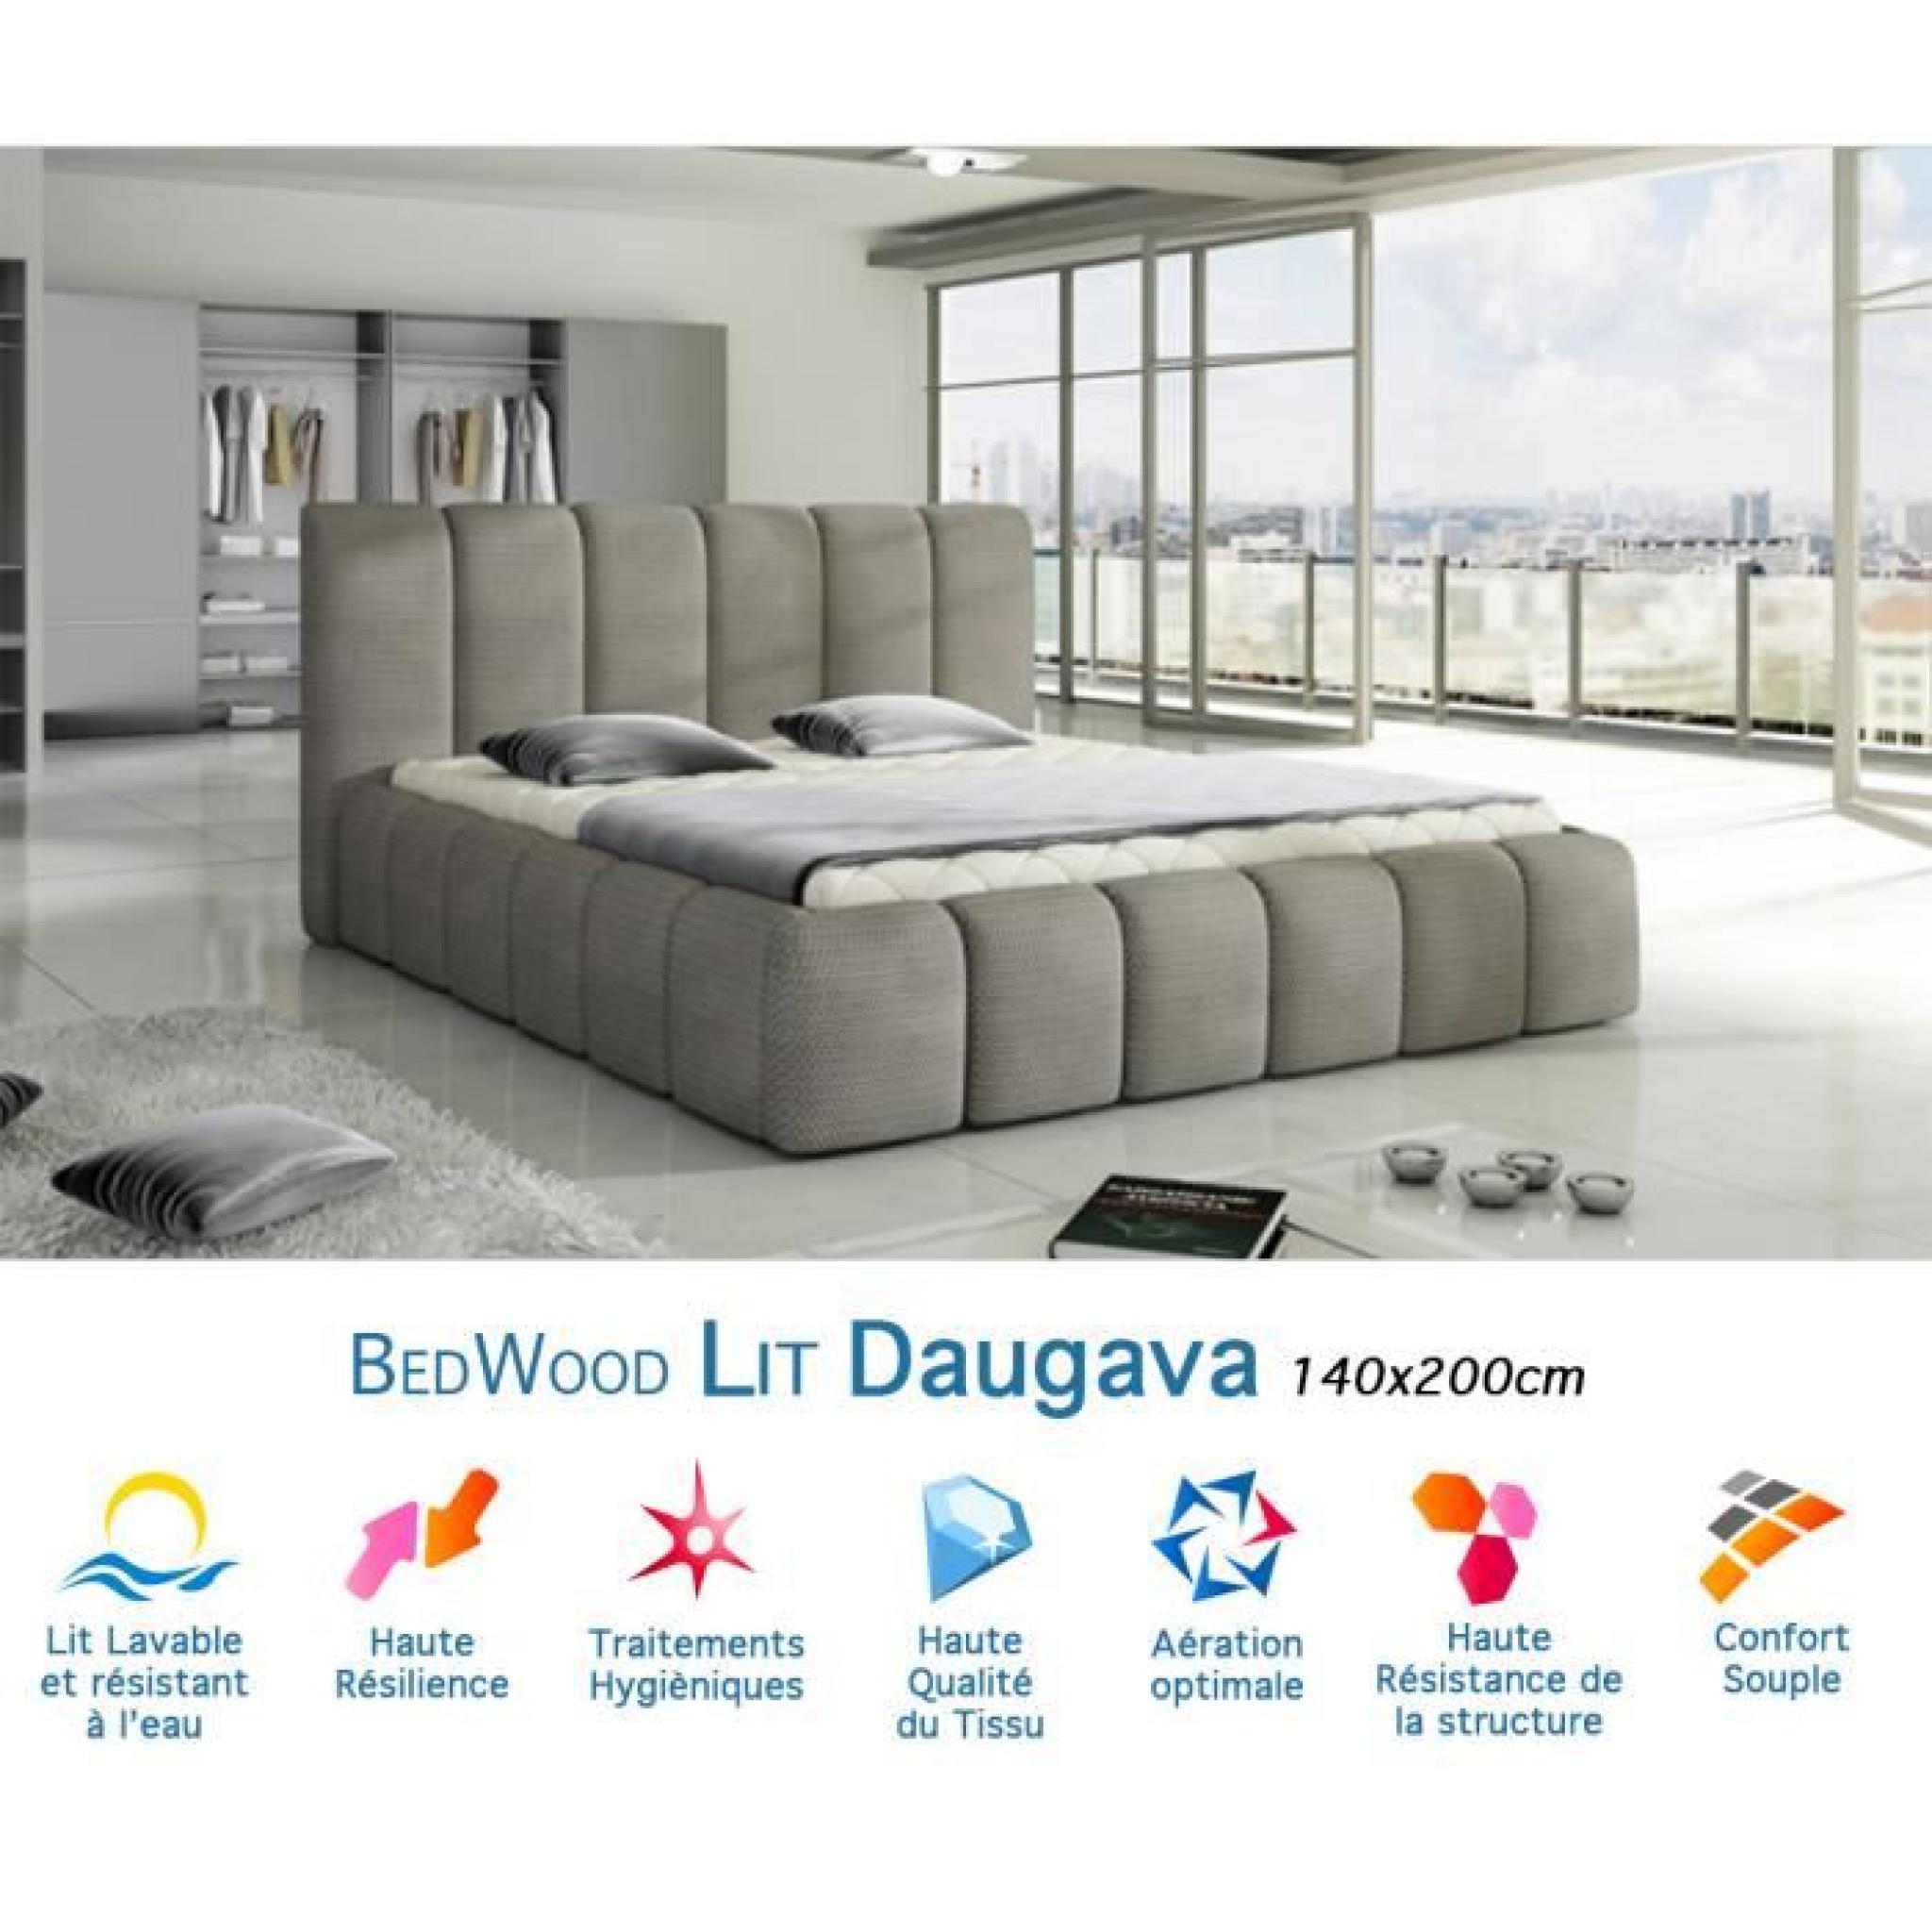 Lit Design Bedwood Daugava 140x200cm